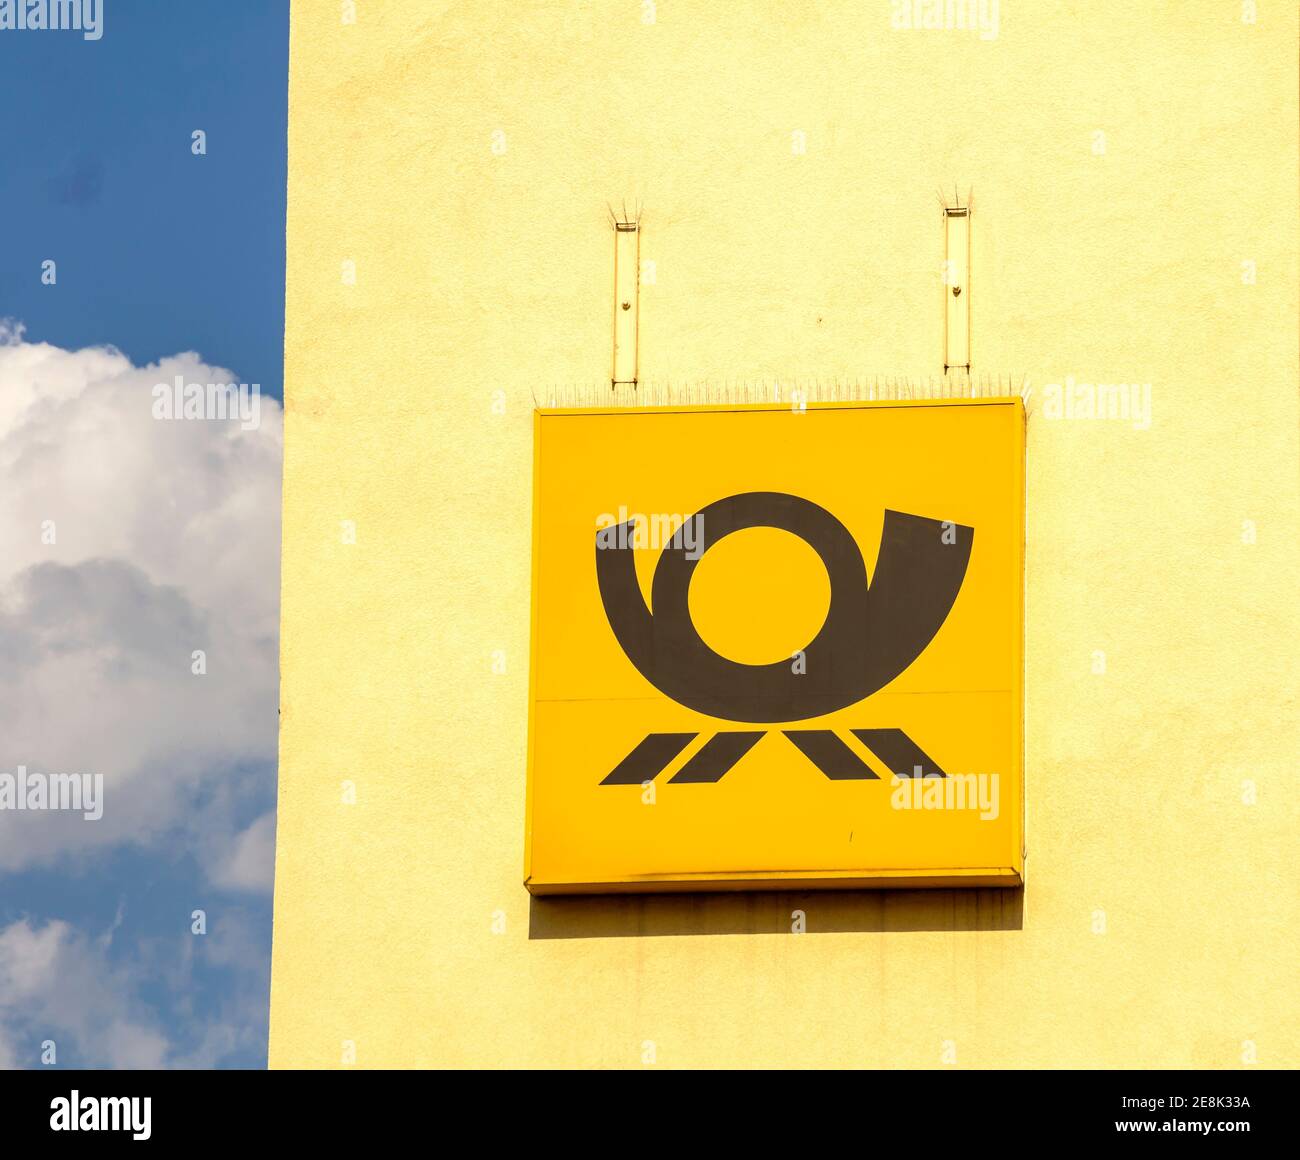 Nürnberg, Deutschland : FRACHTTERMINAL der DEUTSCHEN POST und Logo auf dem Gebäude die Deutsche Post AG ist ein deutsches Kurierunternehmen und das größte der Welt. Stockfoto